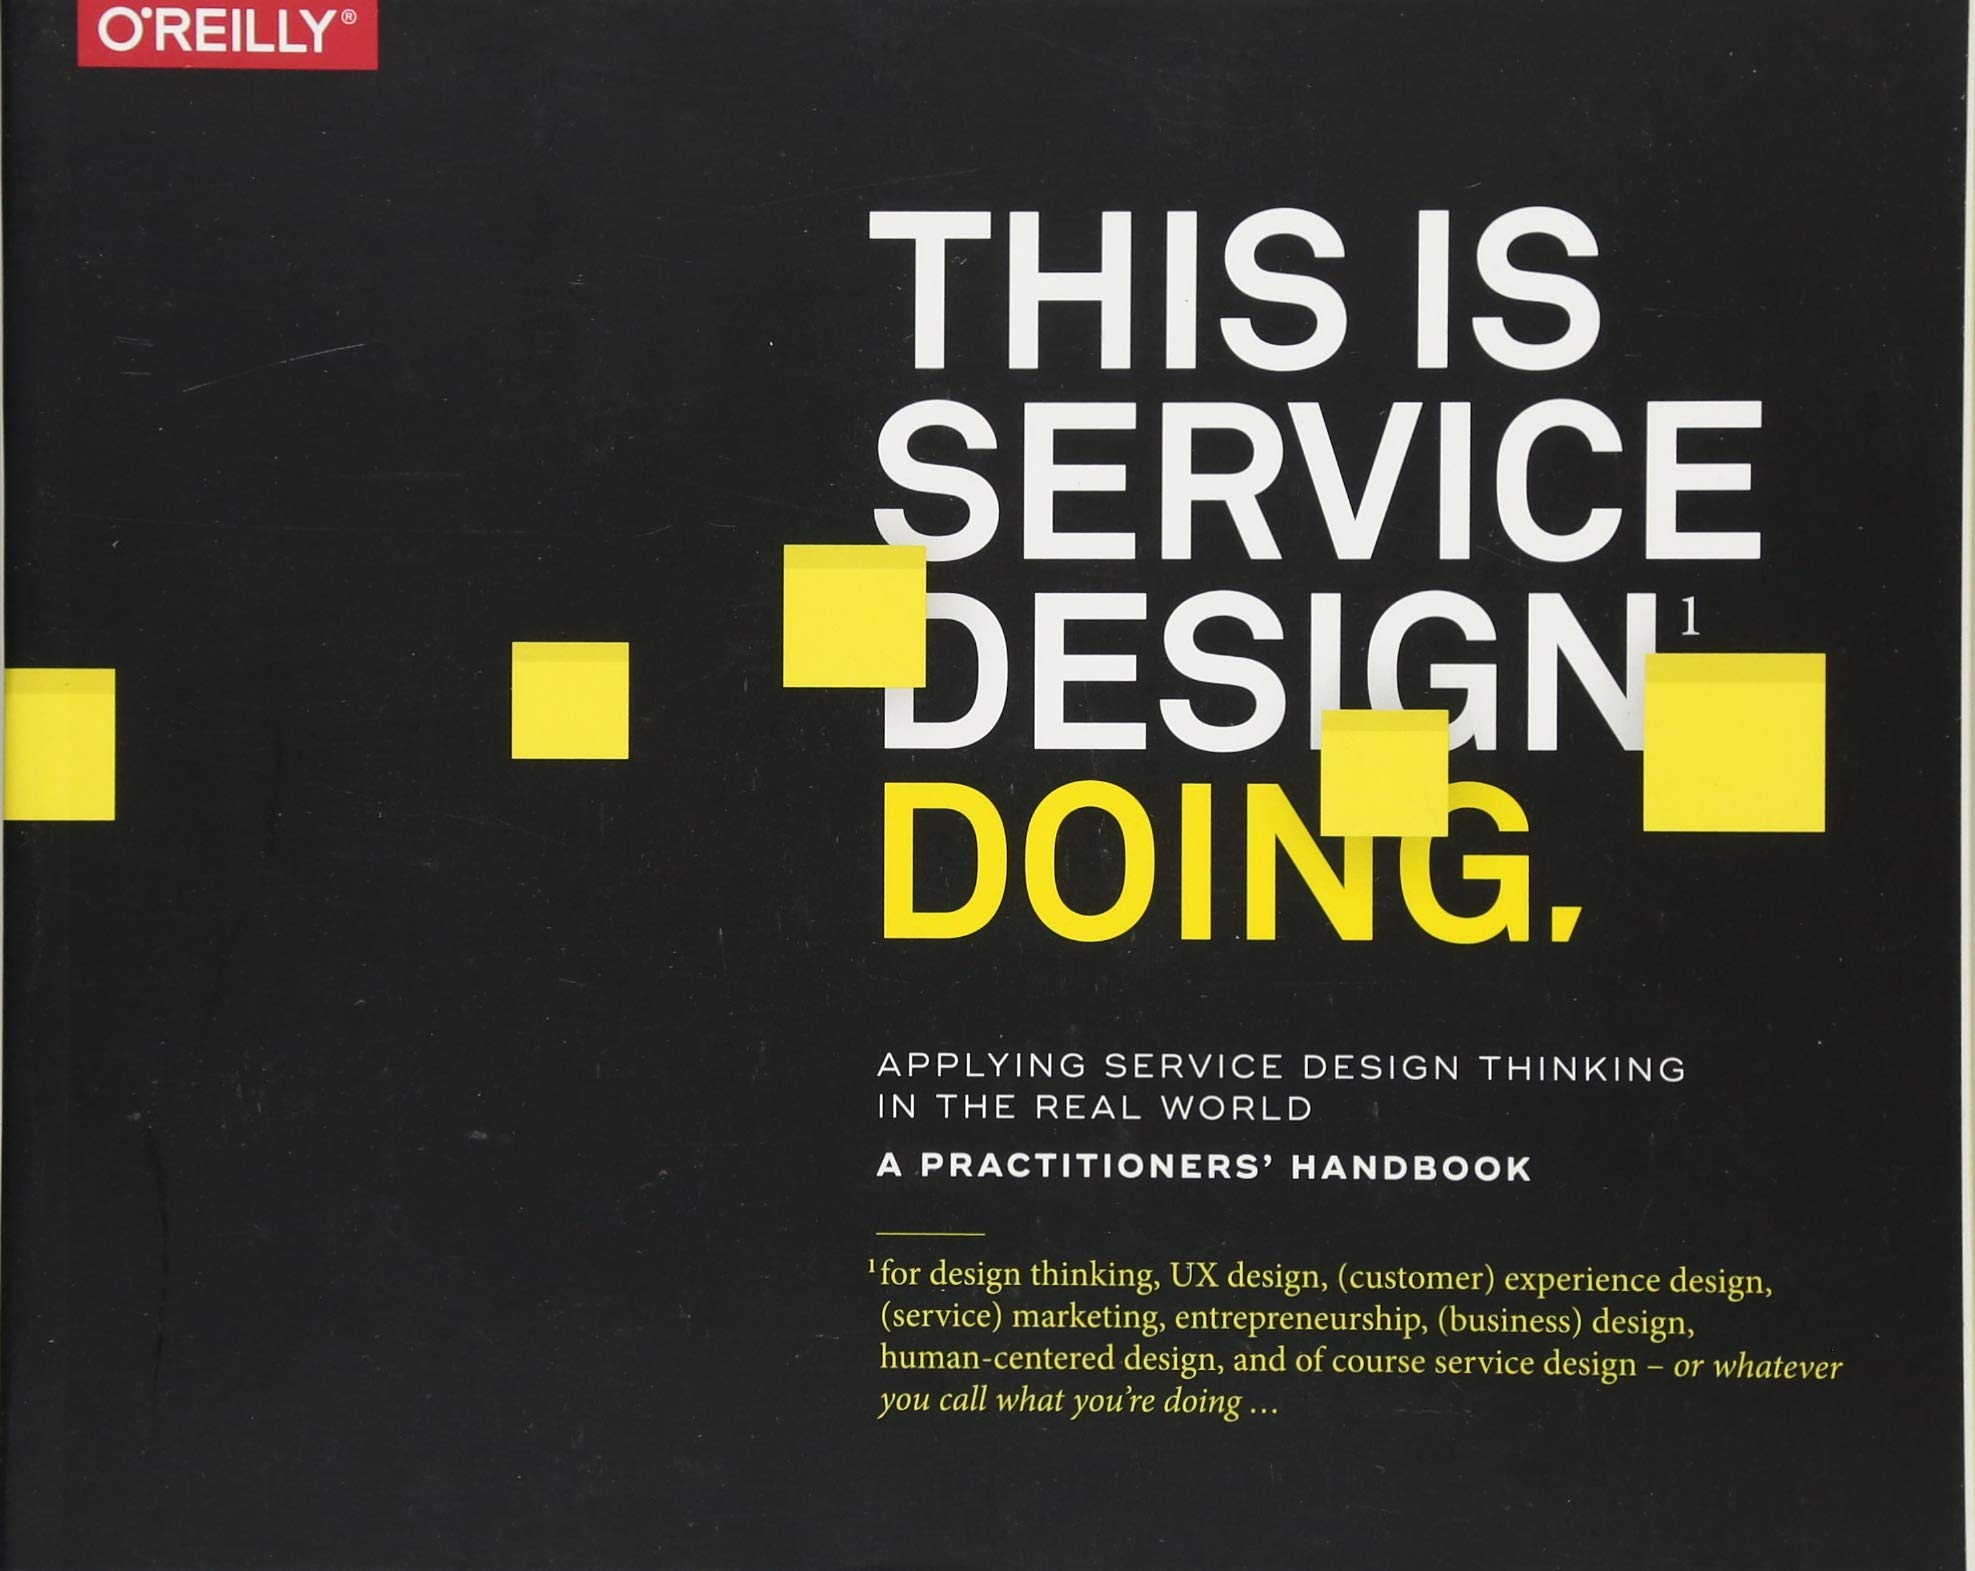 El libro This Is Service Design Doing establece una cultura centrada en el cliente en una organización, es decir diseñar una estructura funcional.